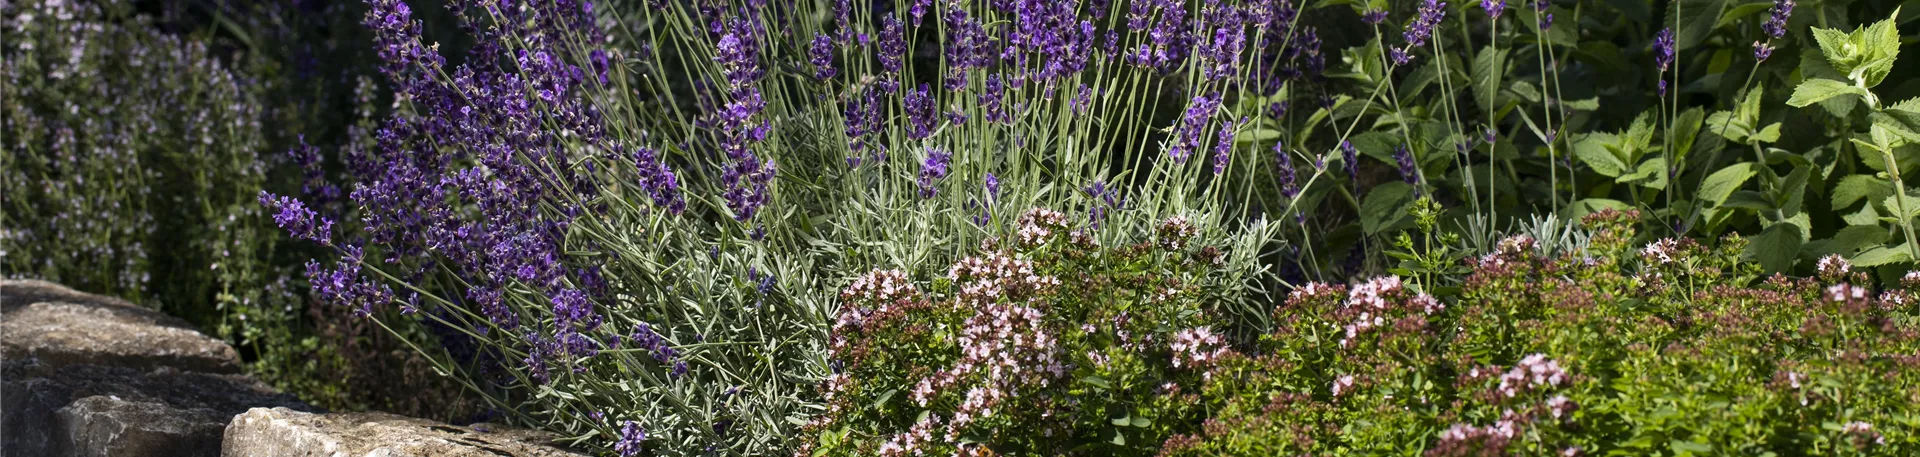 Steingarten mit Lavendel